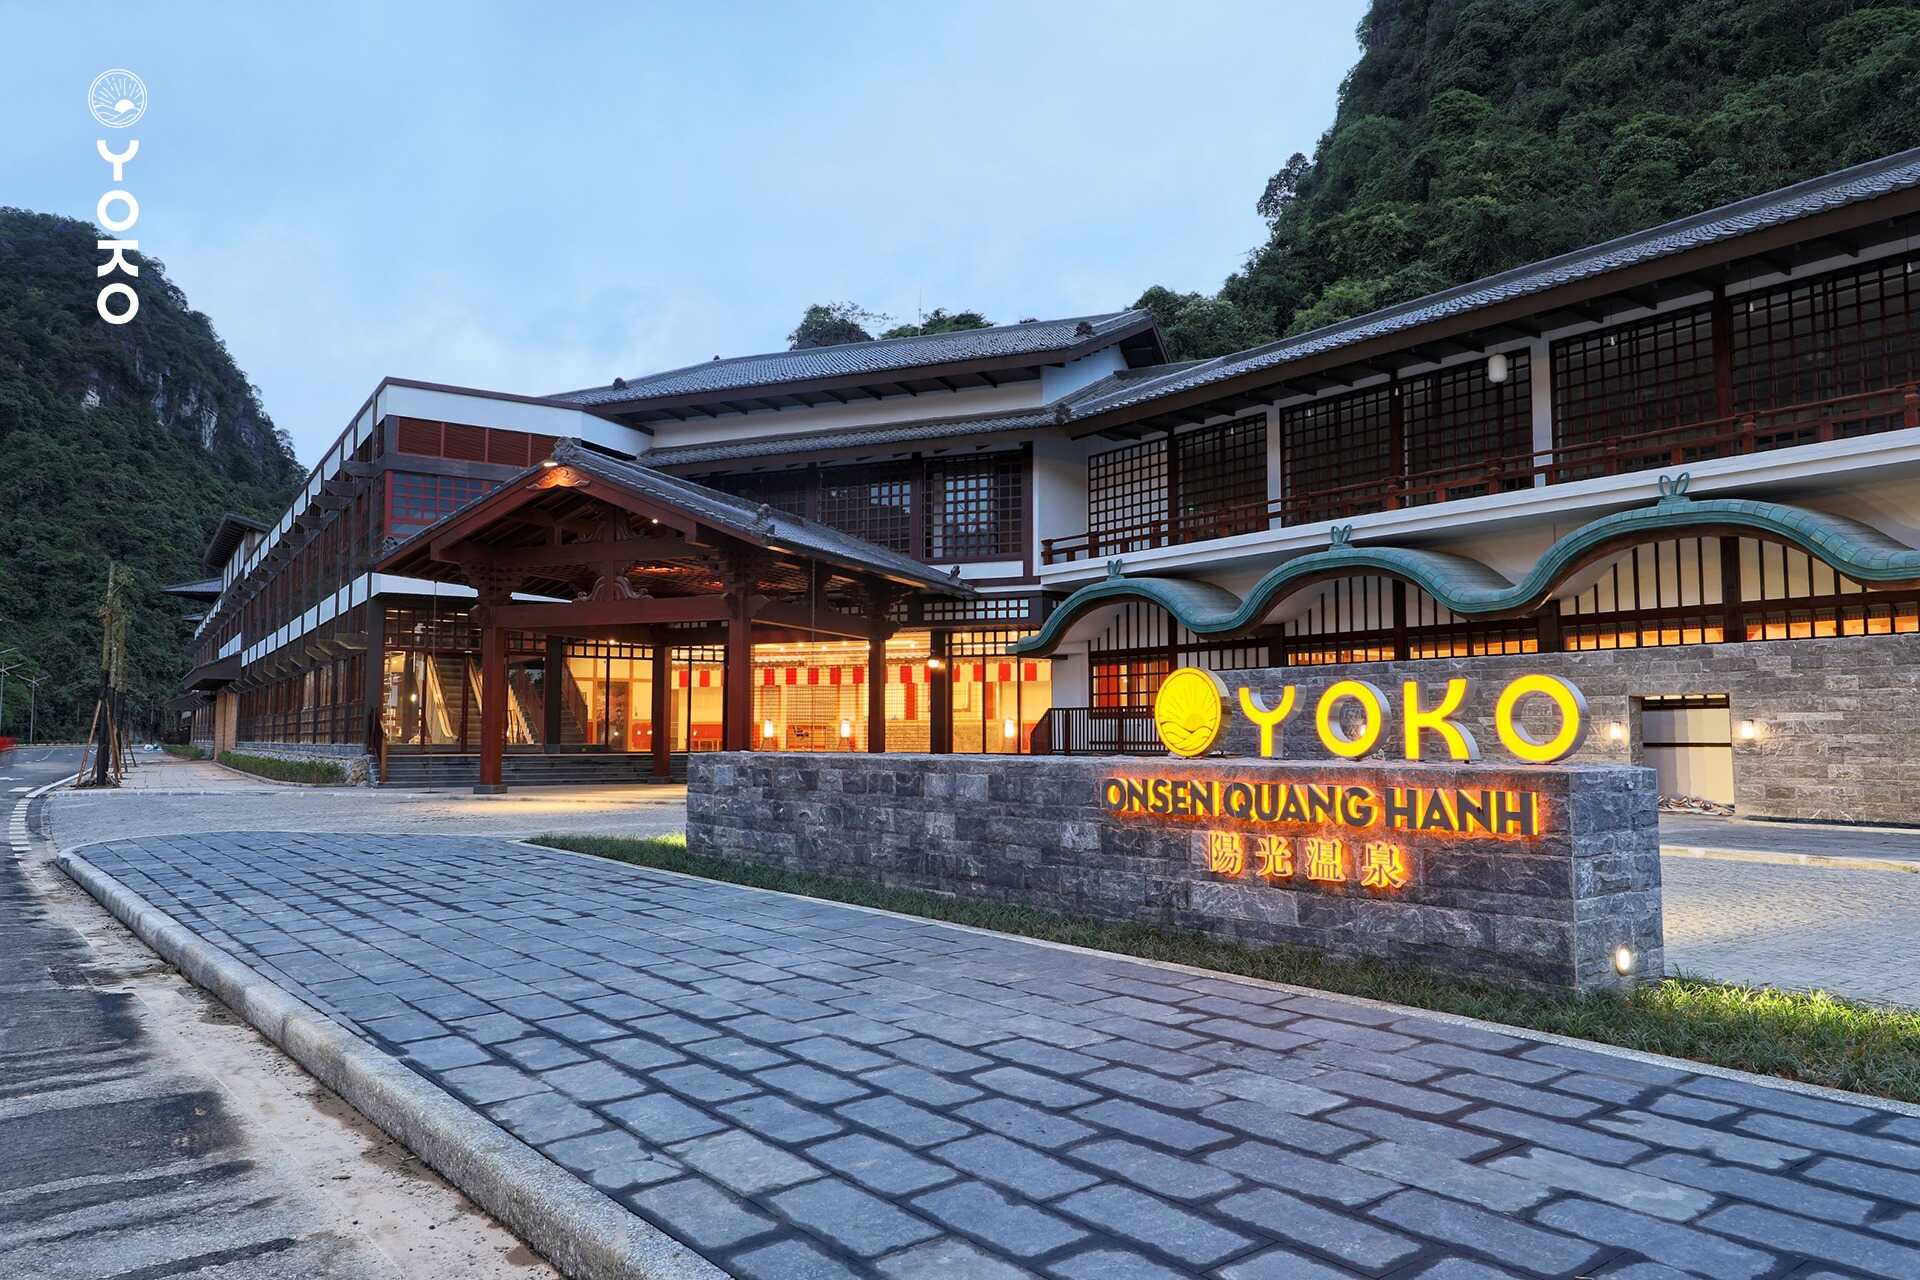 Khu nghỉ dưỡng Yoko Onsen Quang Hanh nằm trong hệ sinh thái Quảng Ninh